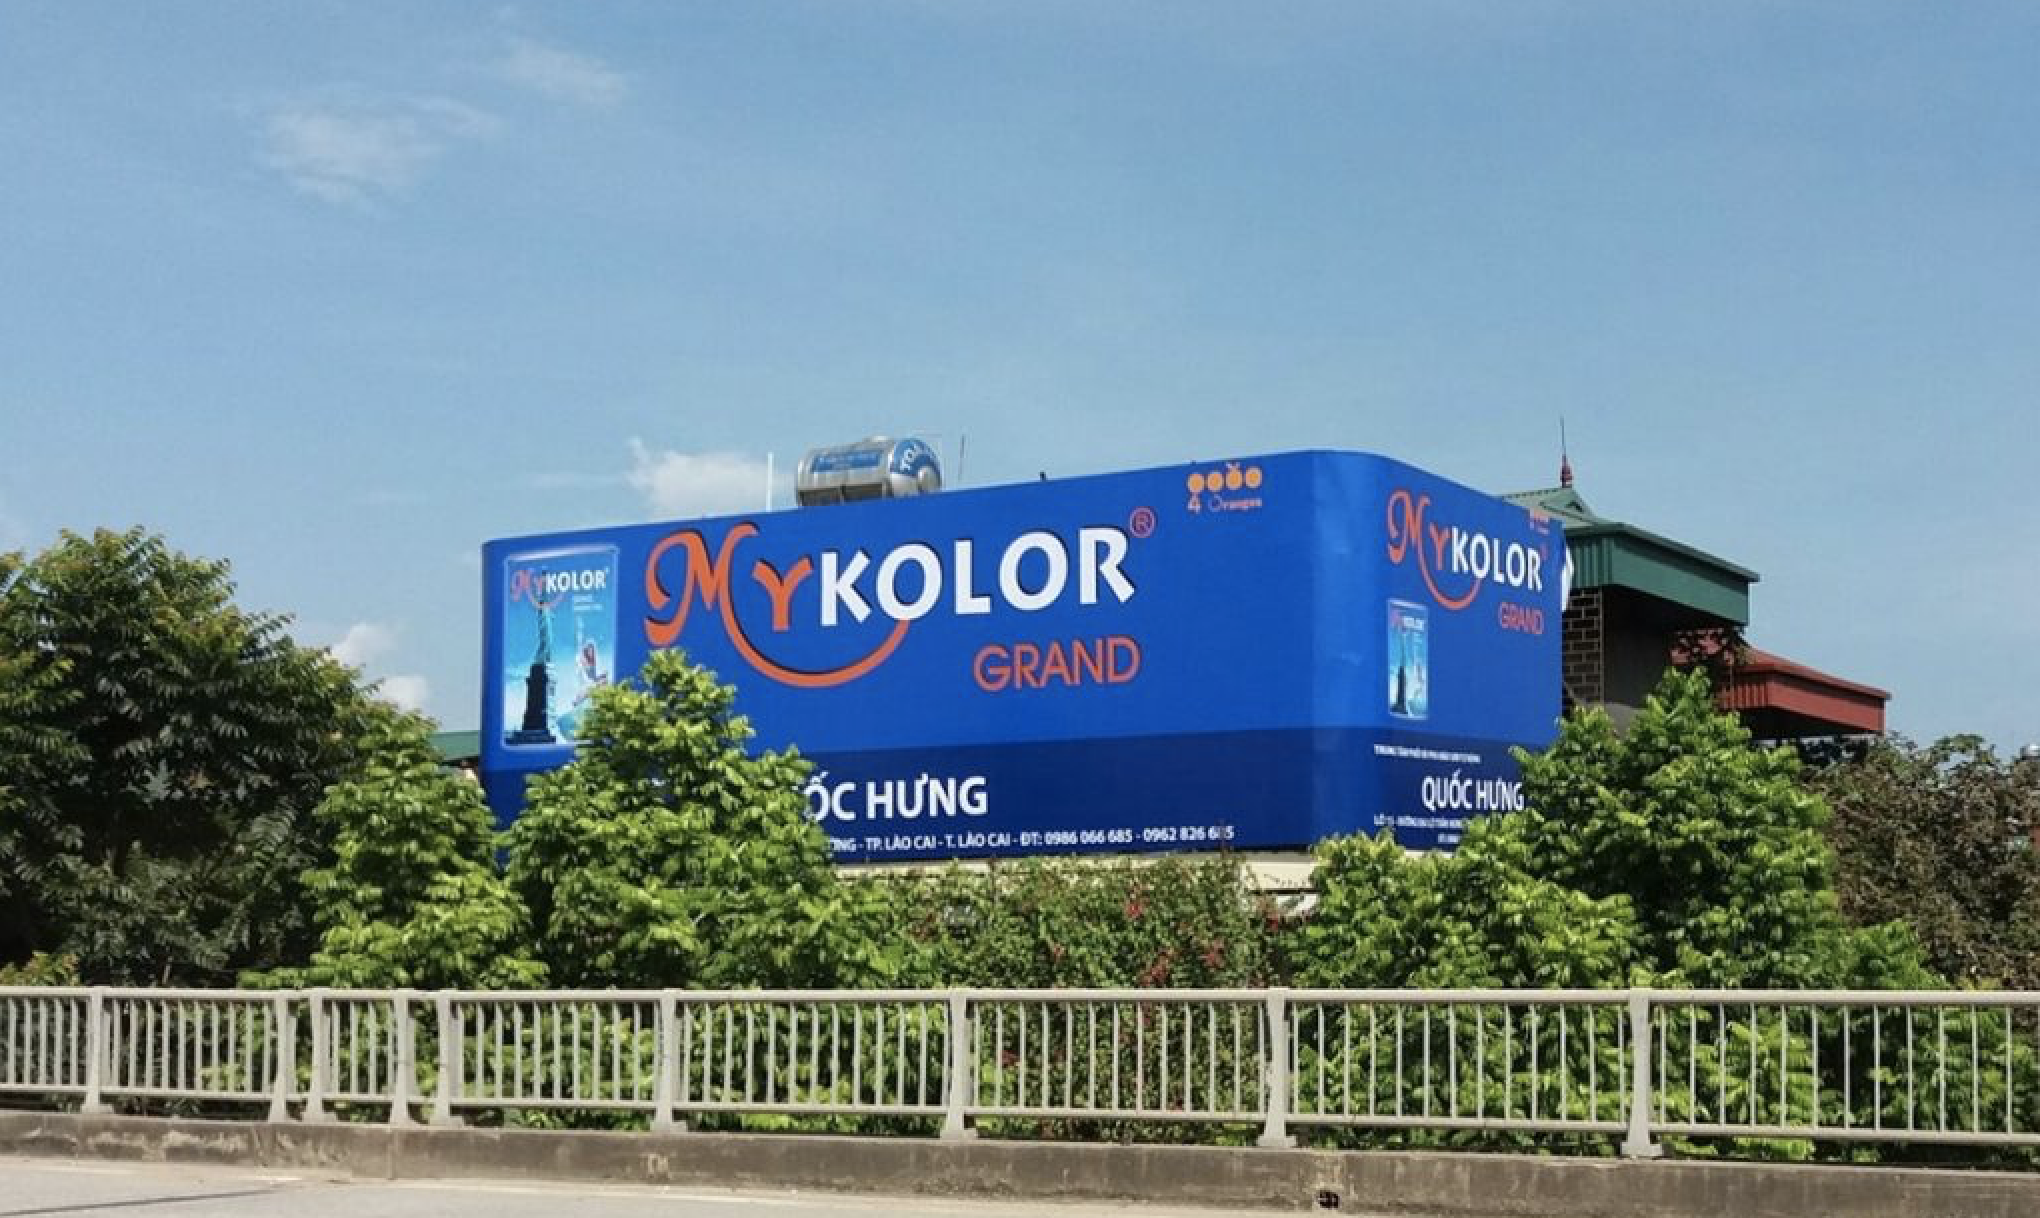 Đầu tư chứng khoán Sơn Mykolor: Sơn Mykolor là một trong những công ty sơn hàng đầu Việt Nam, cung cấp những sản phẩm sơn chất lượng cao. Đầu tư chứng khoán Sơn Mykolor là một cơ hội tốt để mở rộng mạng lưới kinh doanh và tăng trưởng lợi nhuận.